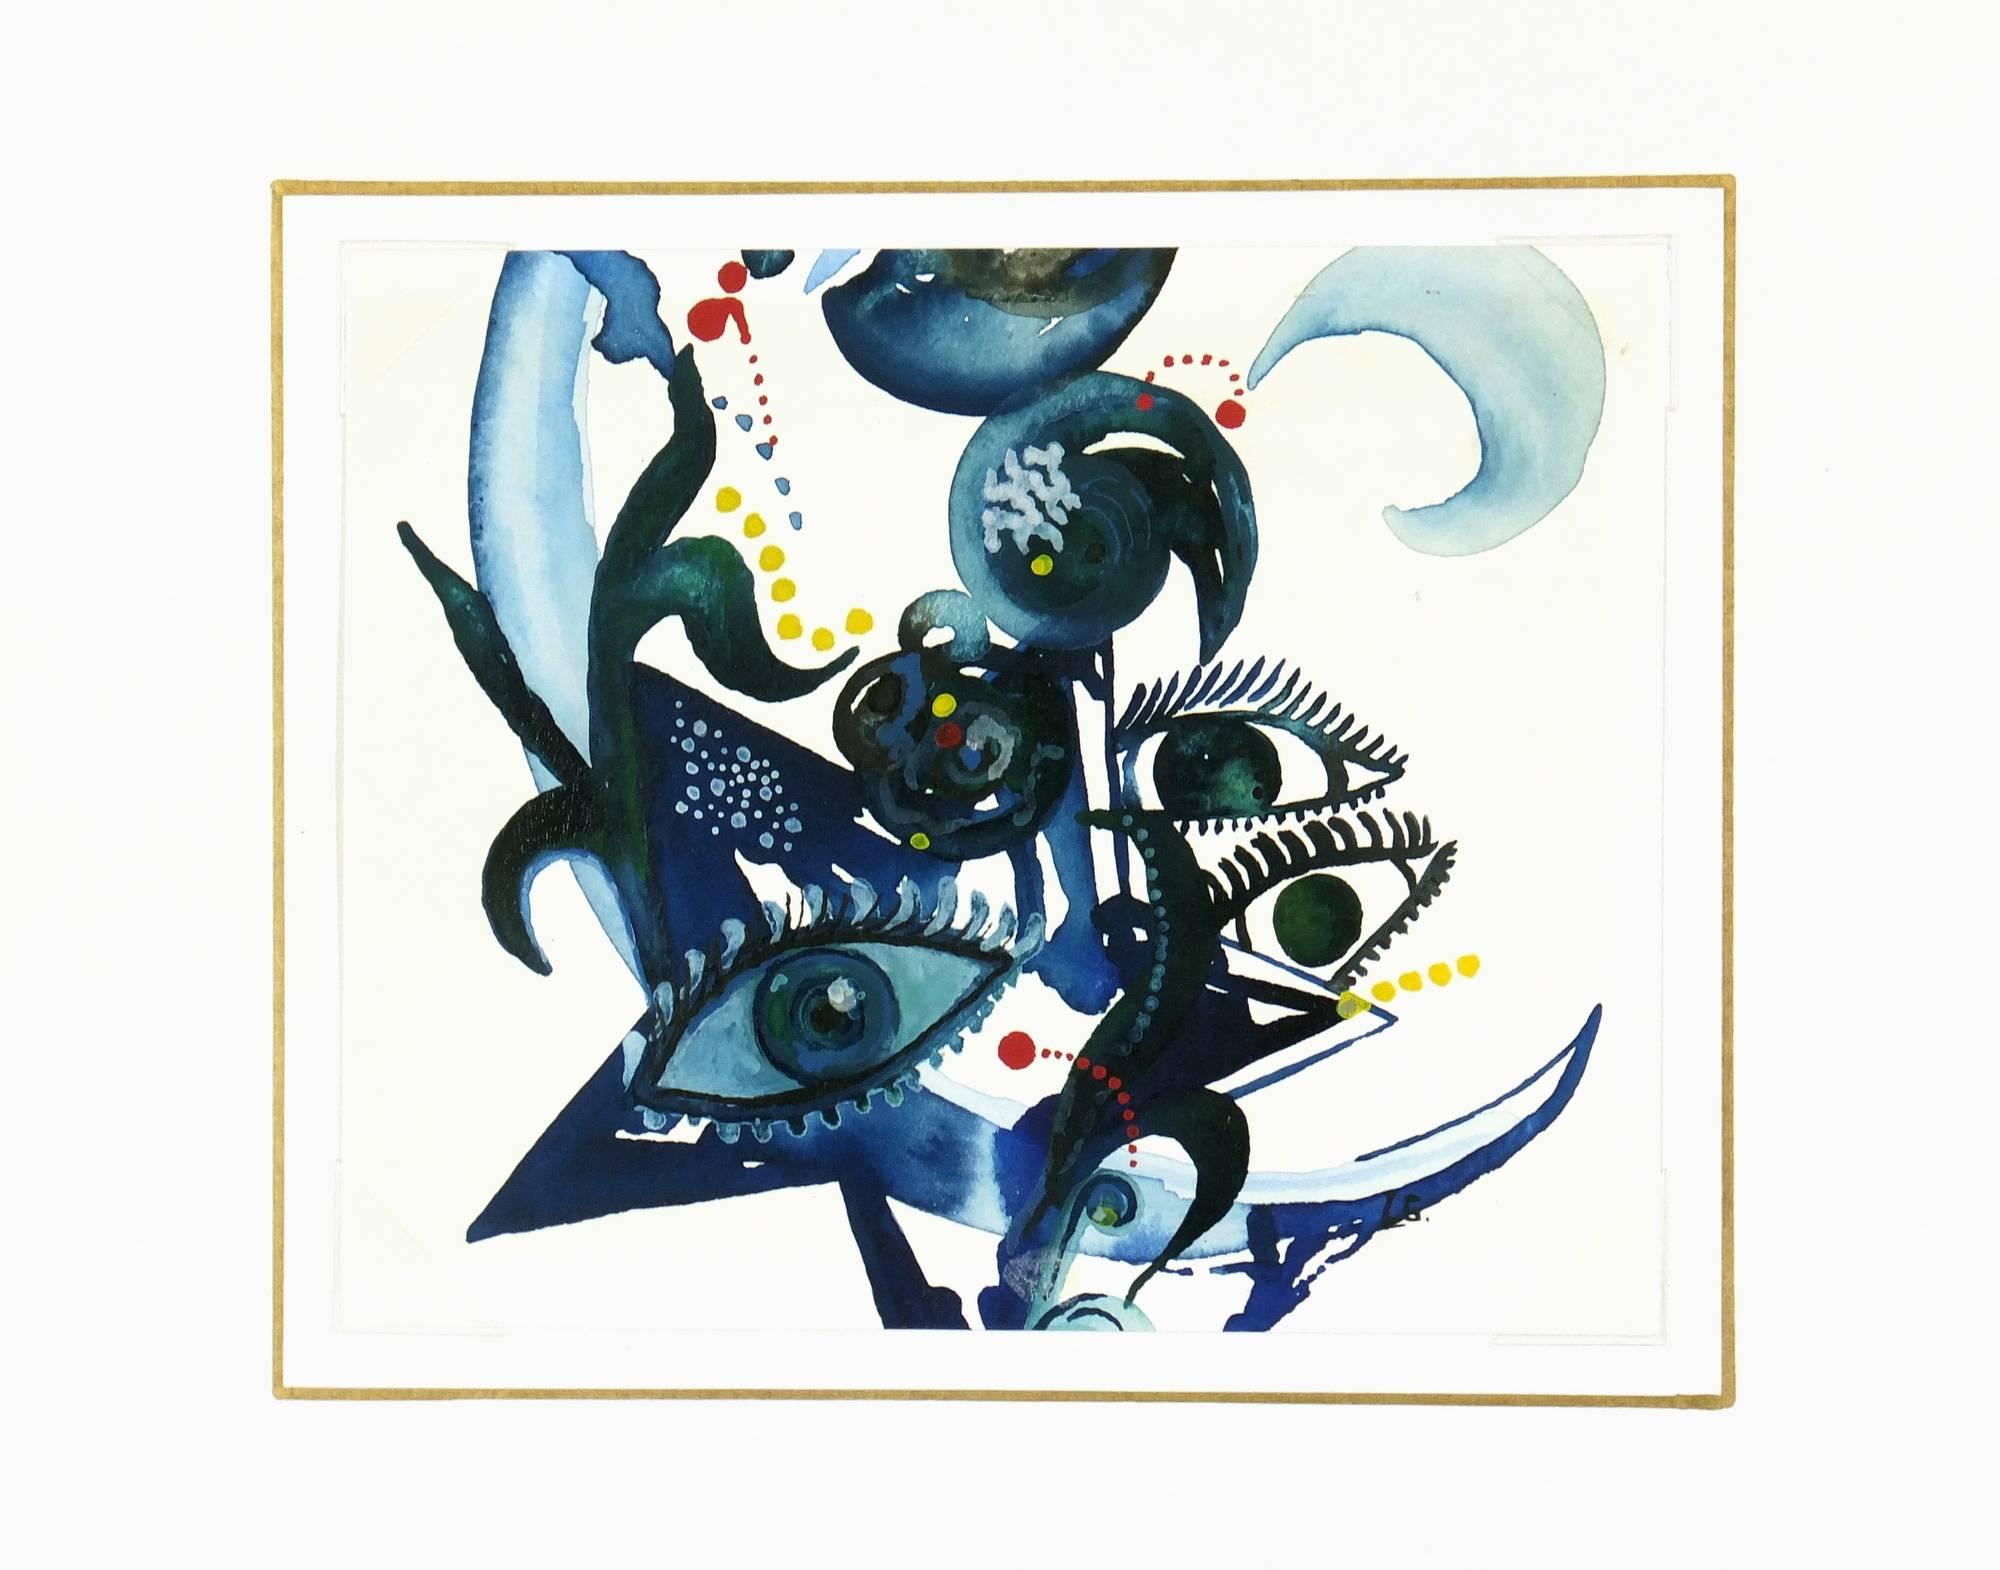 Moderne Aquarellmalerei mit detaillierten Augen in Blau, 2011.    

Originalkunstwerk auf Papier auf einem weißen Passepartout mit Goldrand. Die Matte passt in einen Rahmen in Standardgröße.  Inklusive Plastikhülle und Echtheitszertifikat für die